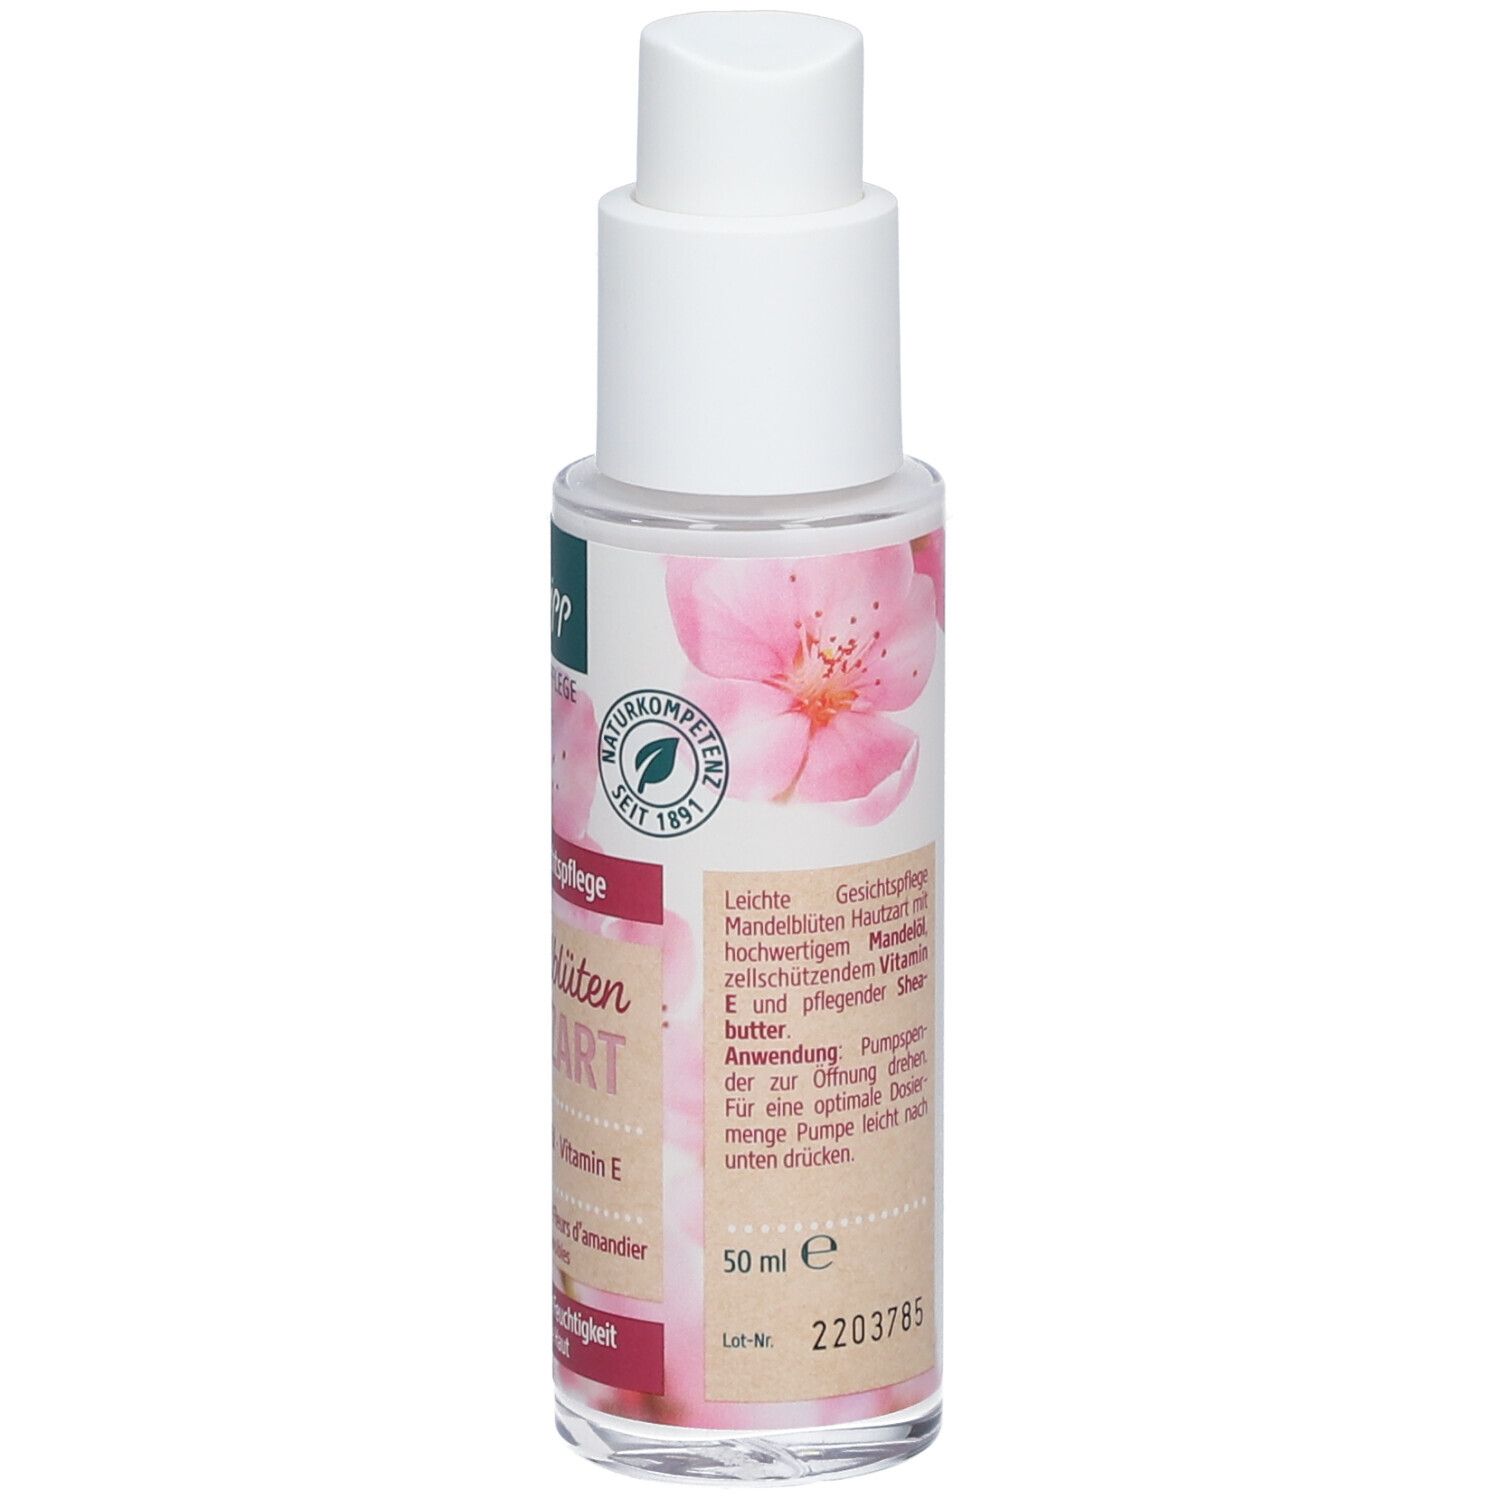 Kneipp® Leichte Gesichtspflege Mandelblüten Hautzart